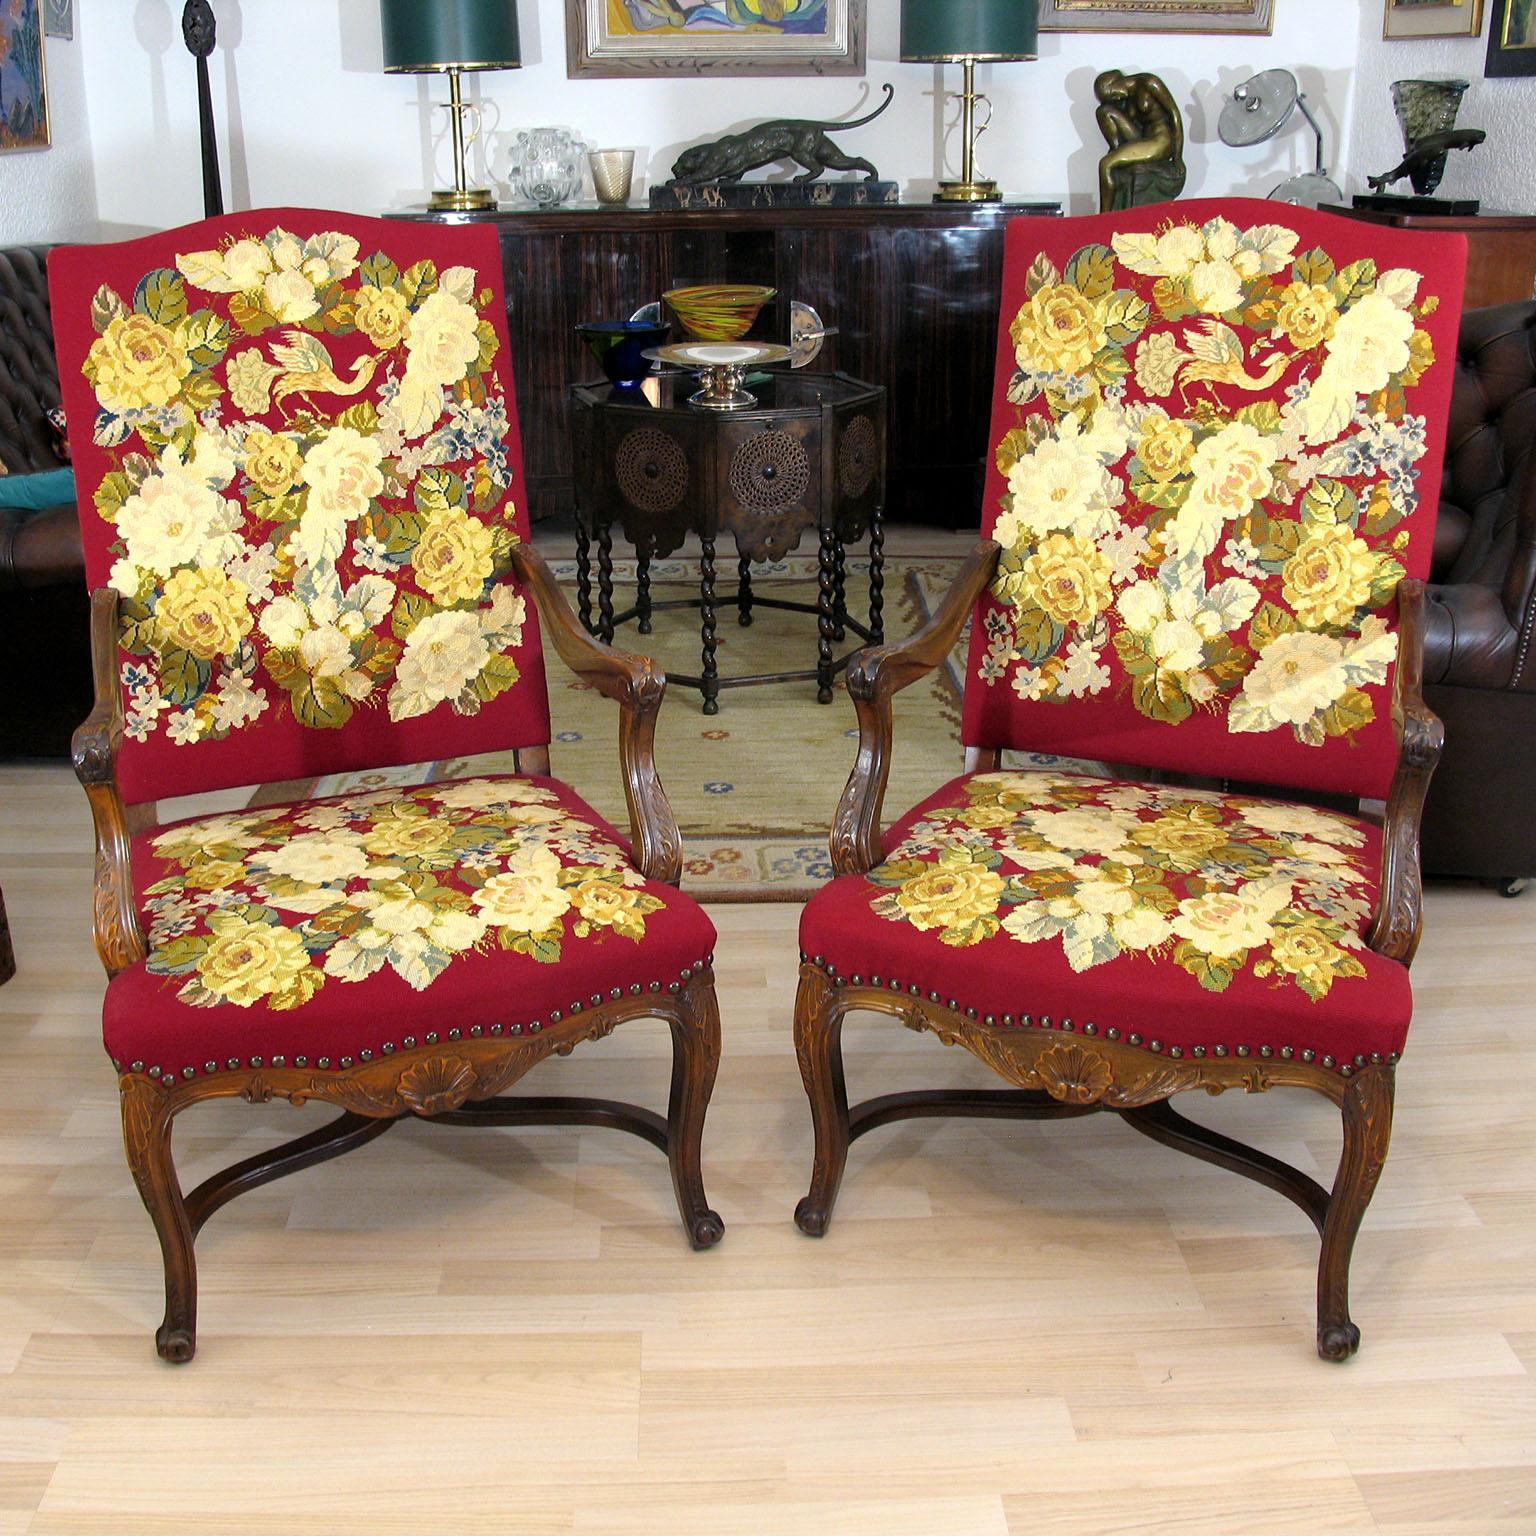 Paire de fauteuils baroques avec une magnifique tapisserie brodée.
Exceptionnelle paire de fauteuils du début du XXe siècle en hêtre teinté et tapisserie à l'aiguille, réalisés dans le style baroque tardif.
La tapisserie est impeccablement